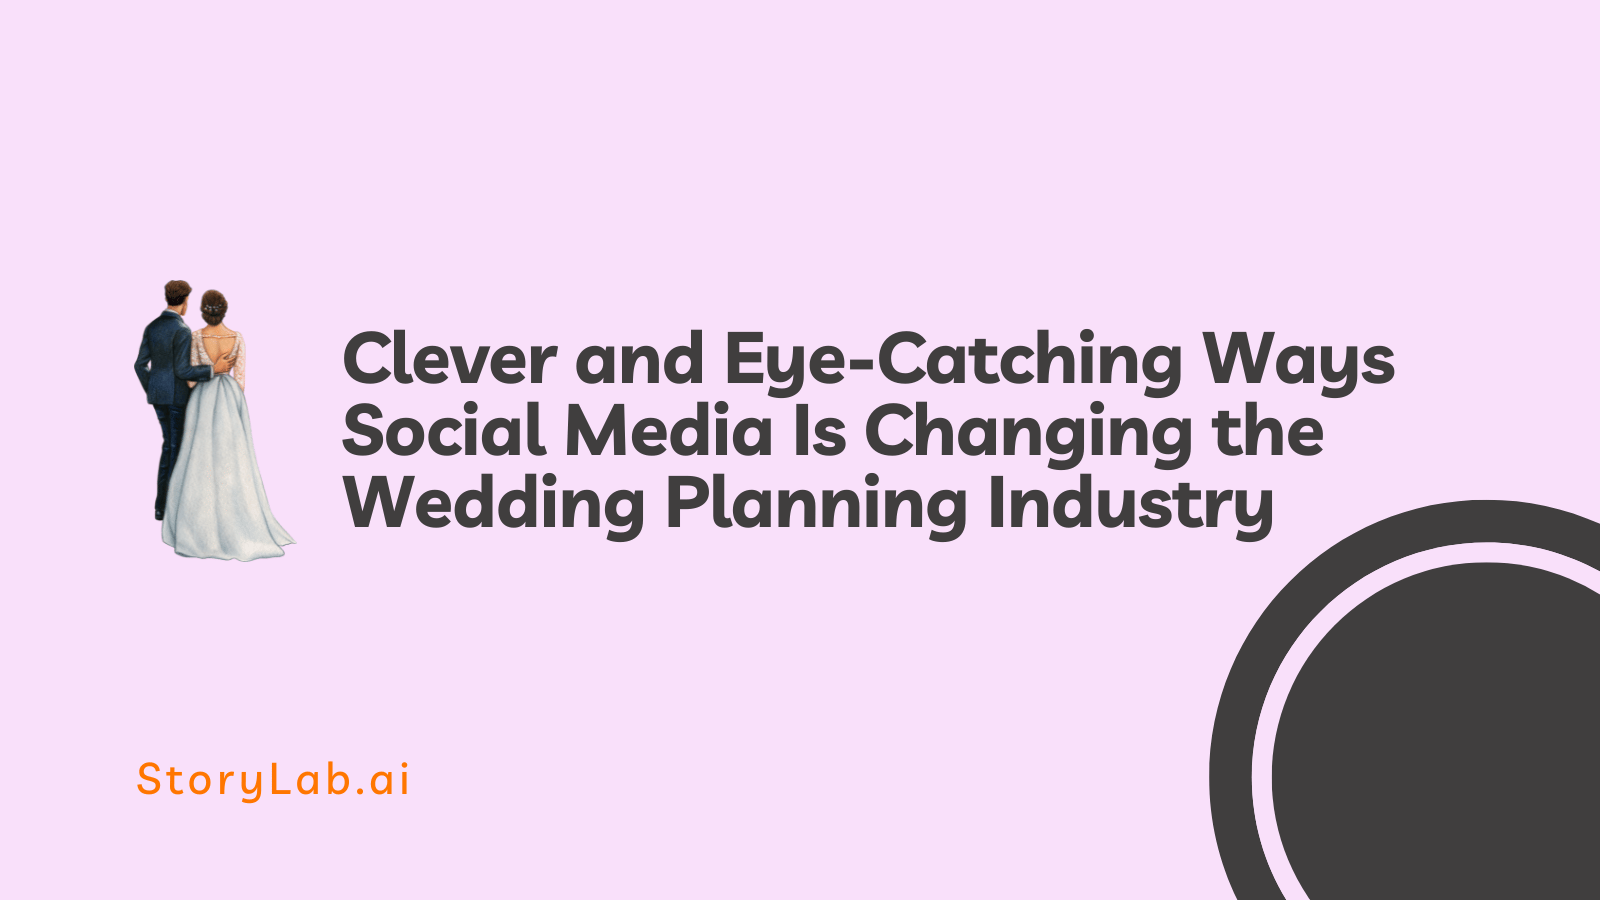 Formas inteligentes y llamativas en que las redes sociales están cambiando la industria de la planificación de bodas